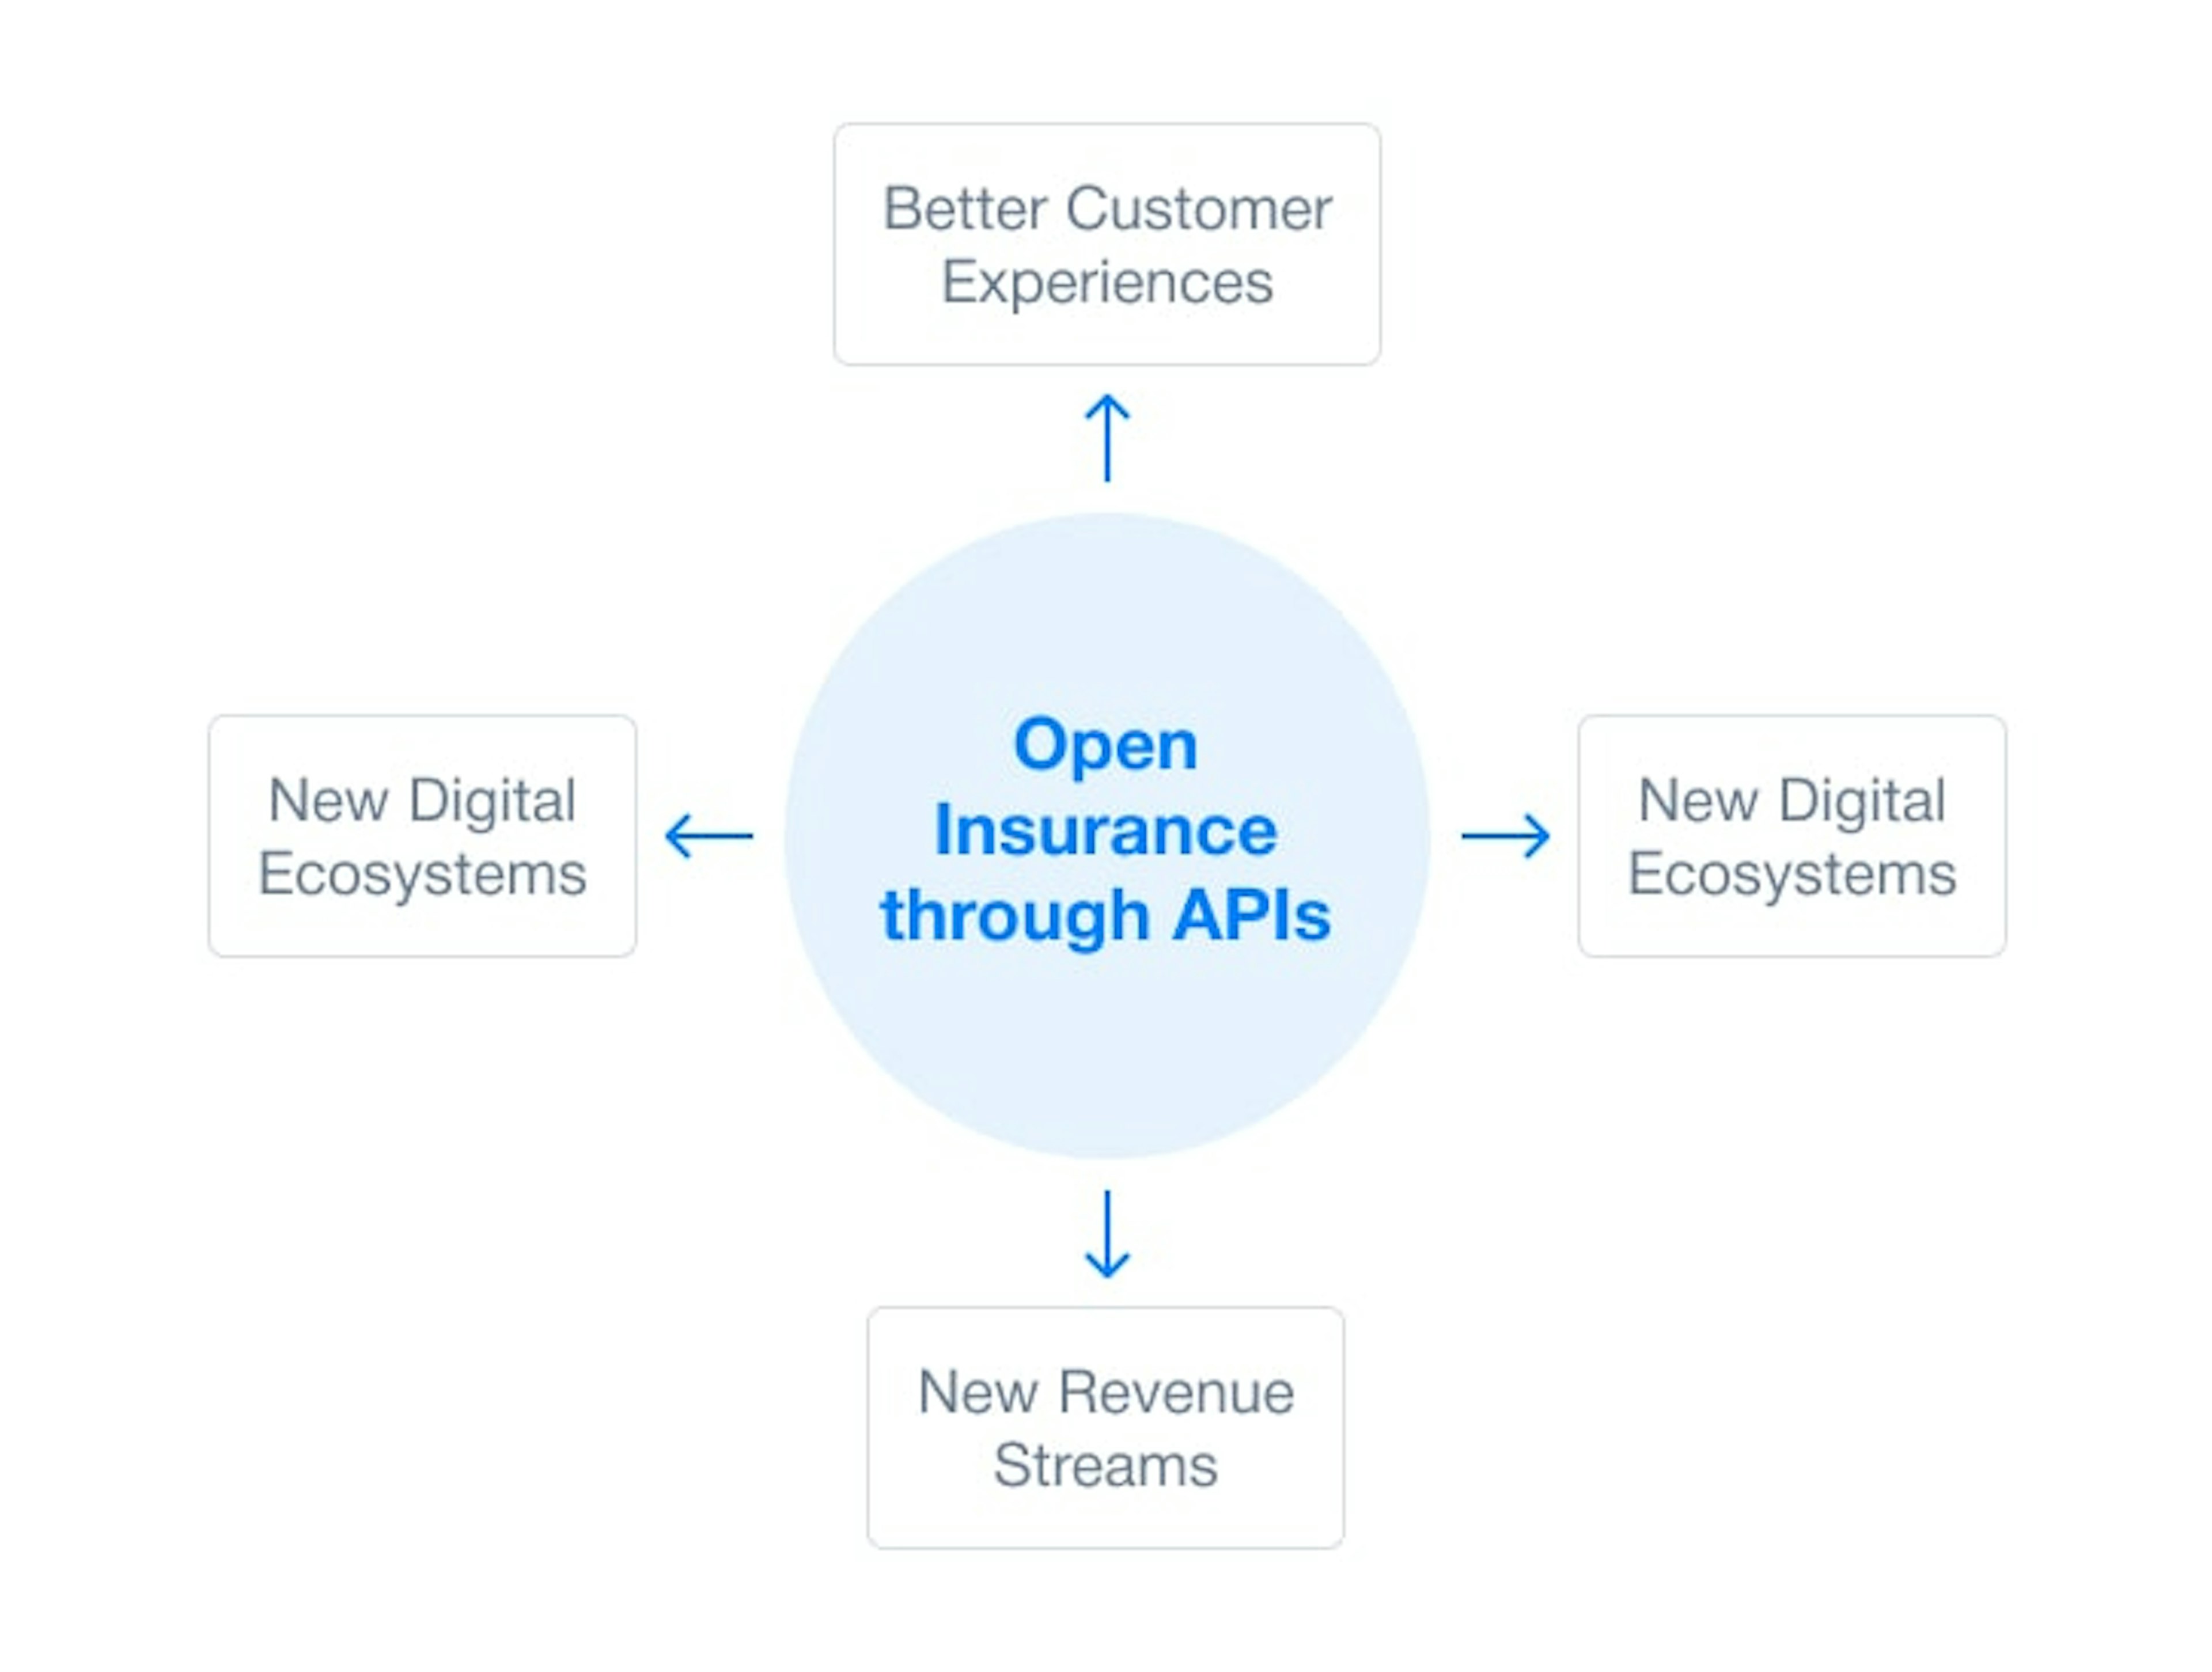 Insurance API